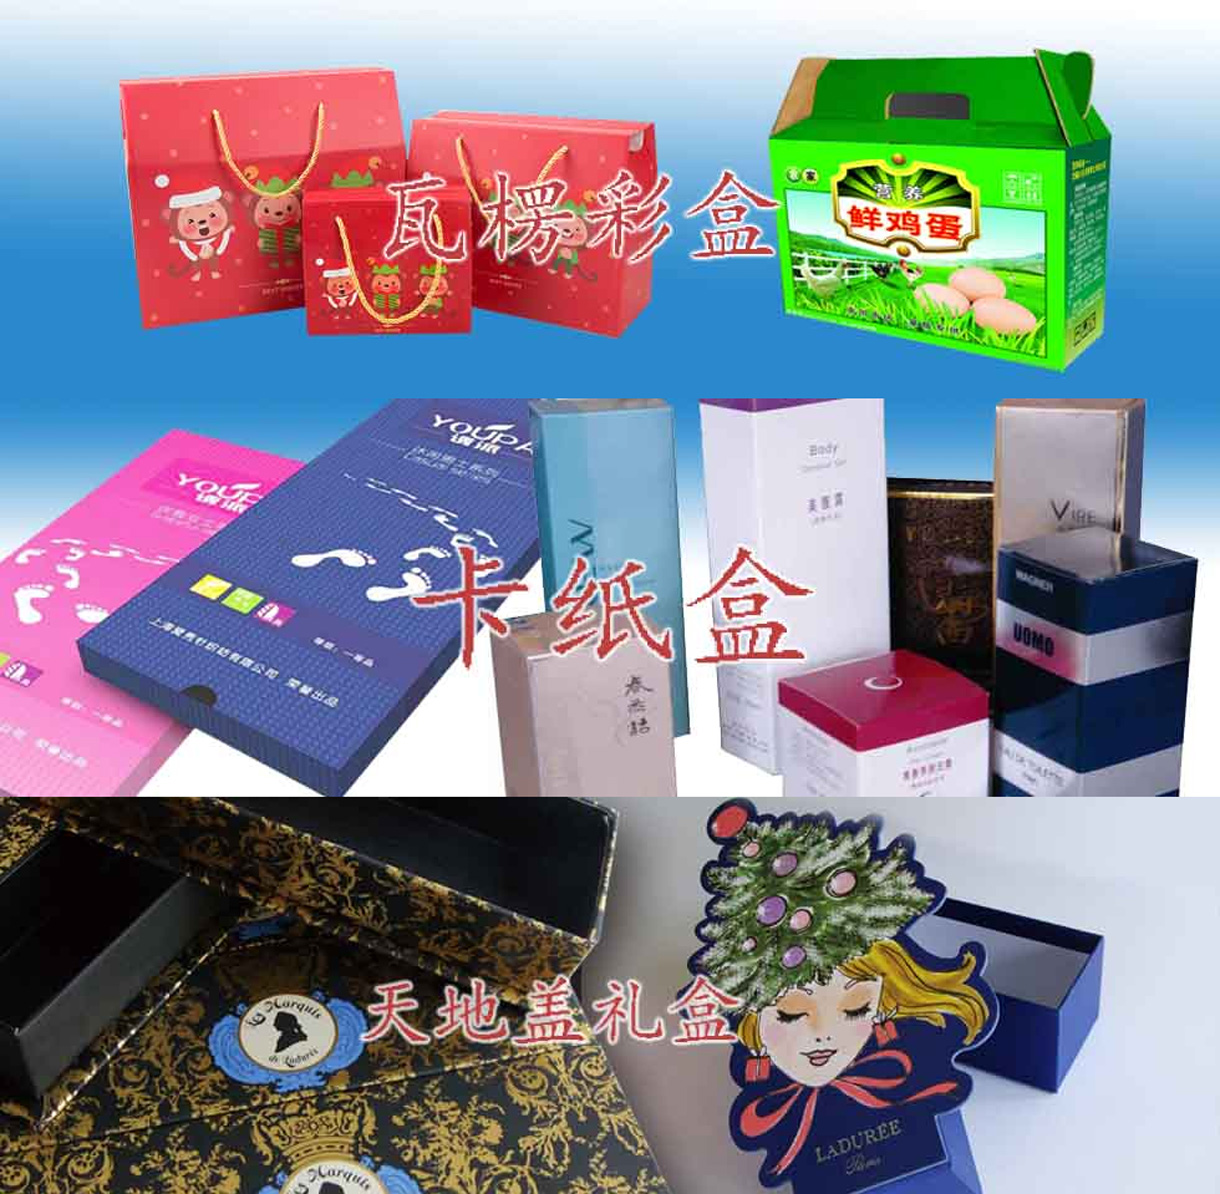 上海欣航包装印务有限公司-中国国际包装展-中国包装容器展